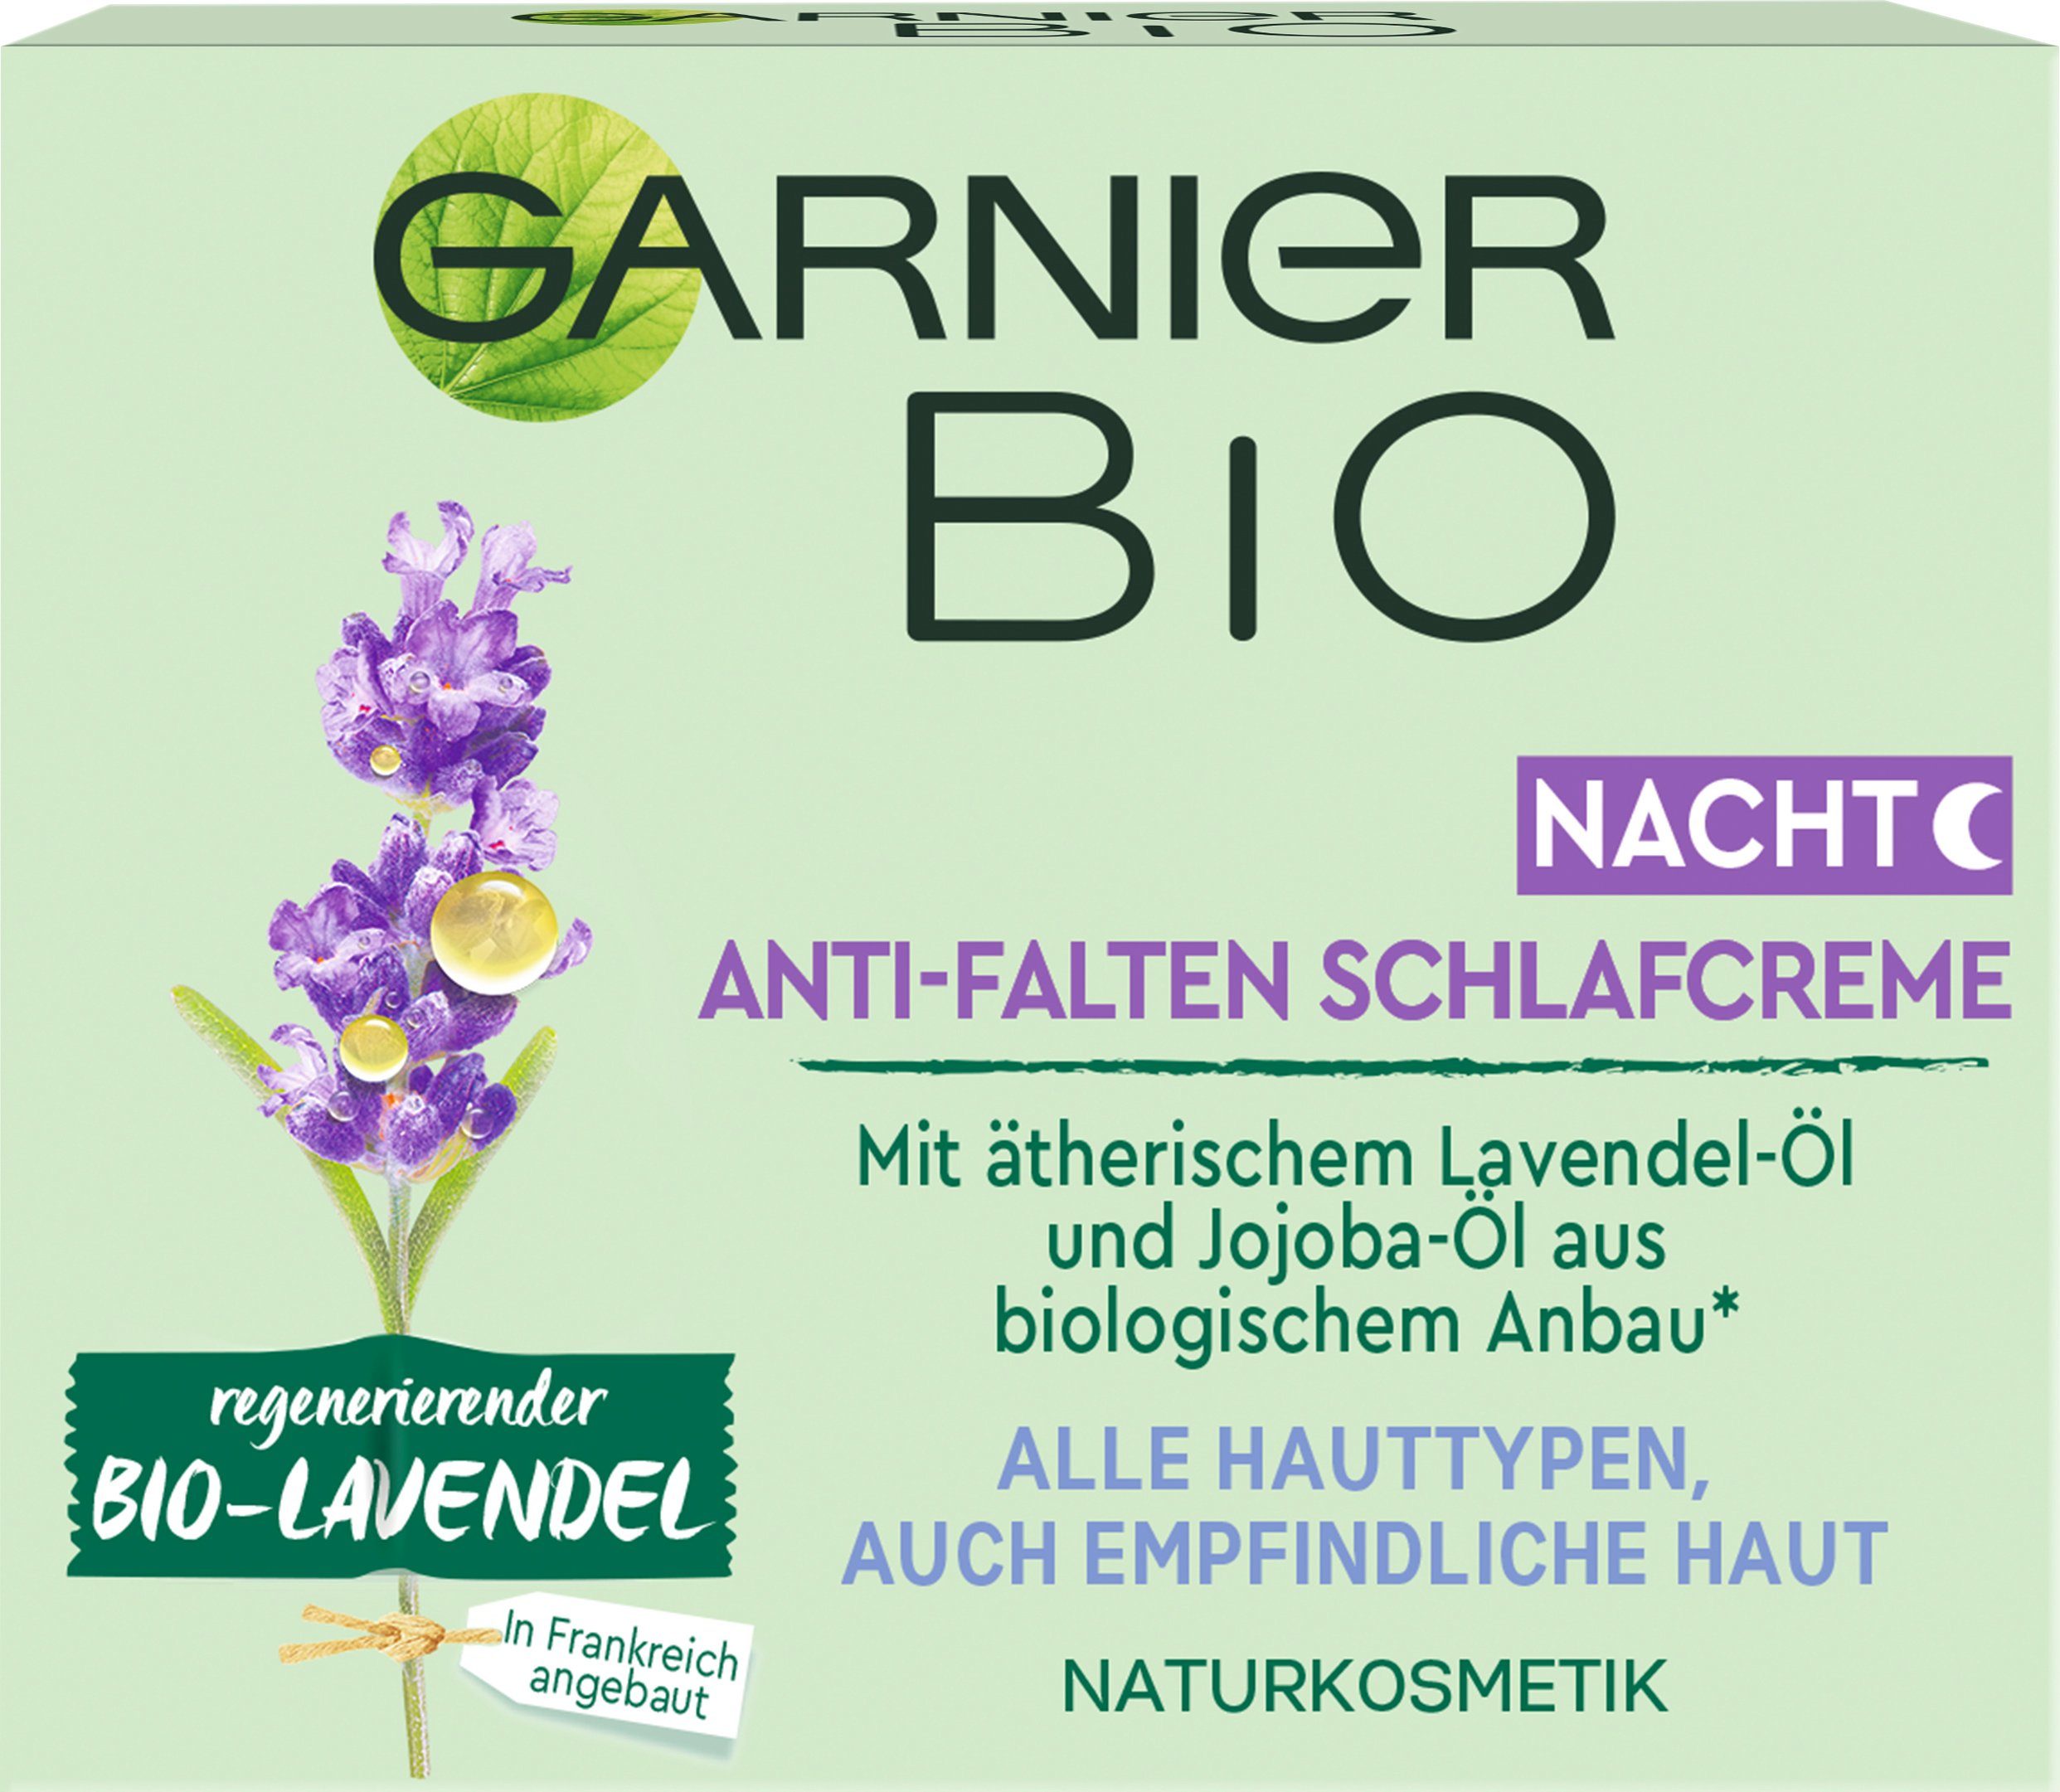 regenerierender GARNIER Anti-Falten Schlafcreme Bio-Lavendel Nachtcreme